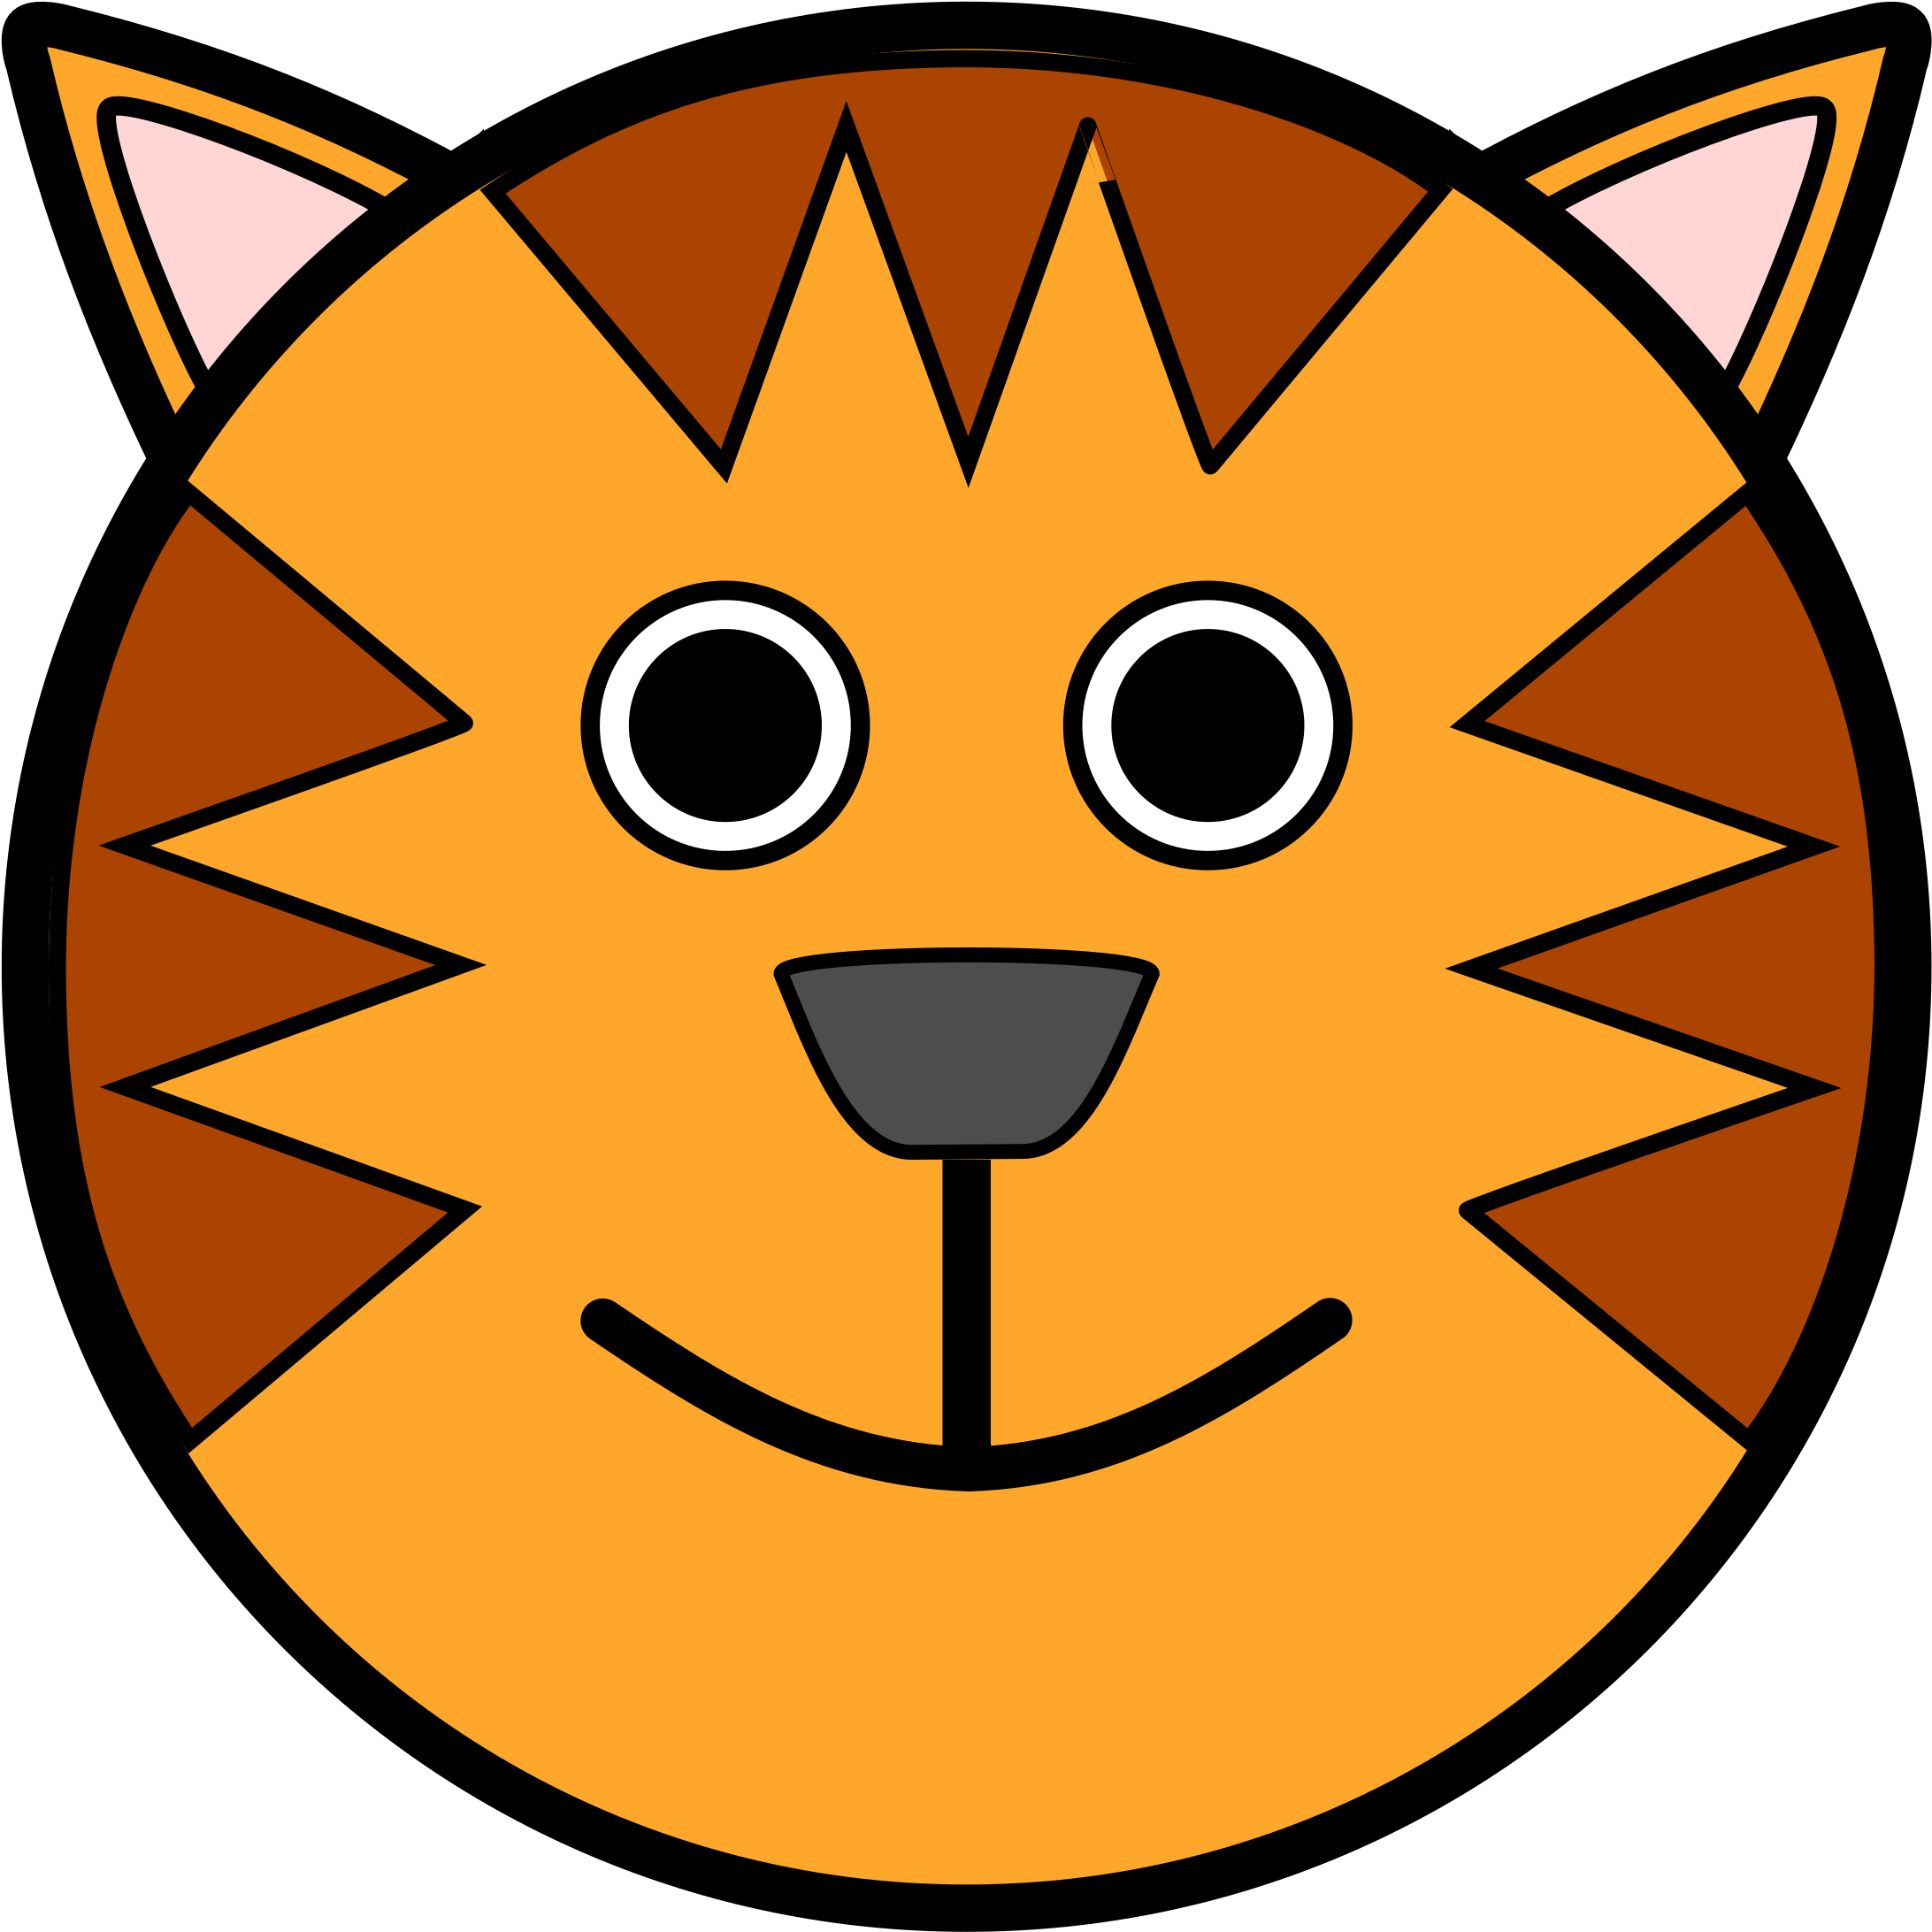 Tiger Face - Tiger Face Cartoon Drawing (2400x2400)